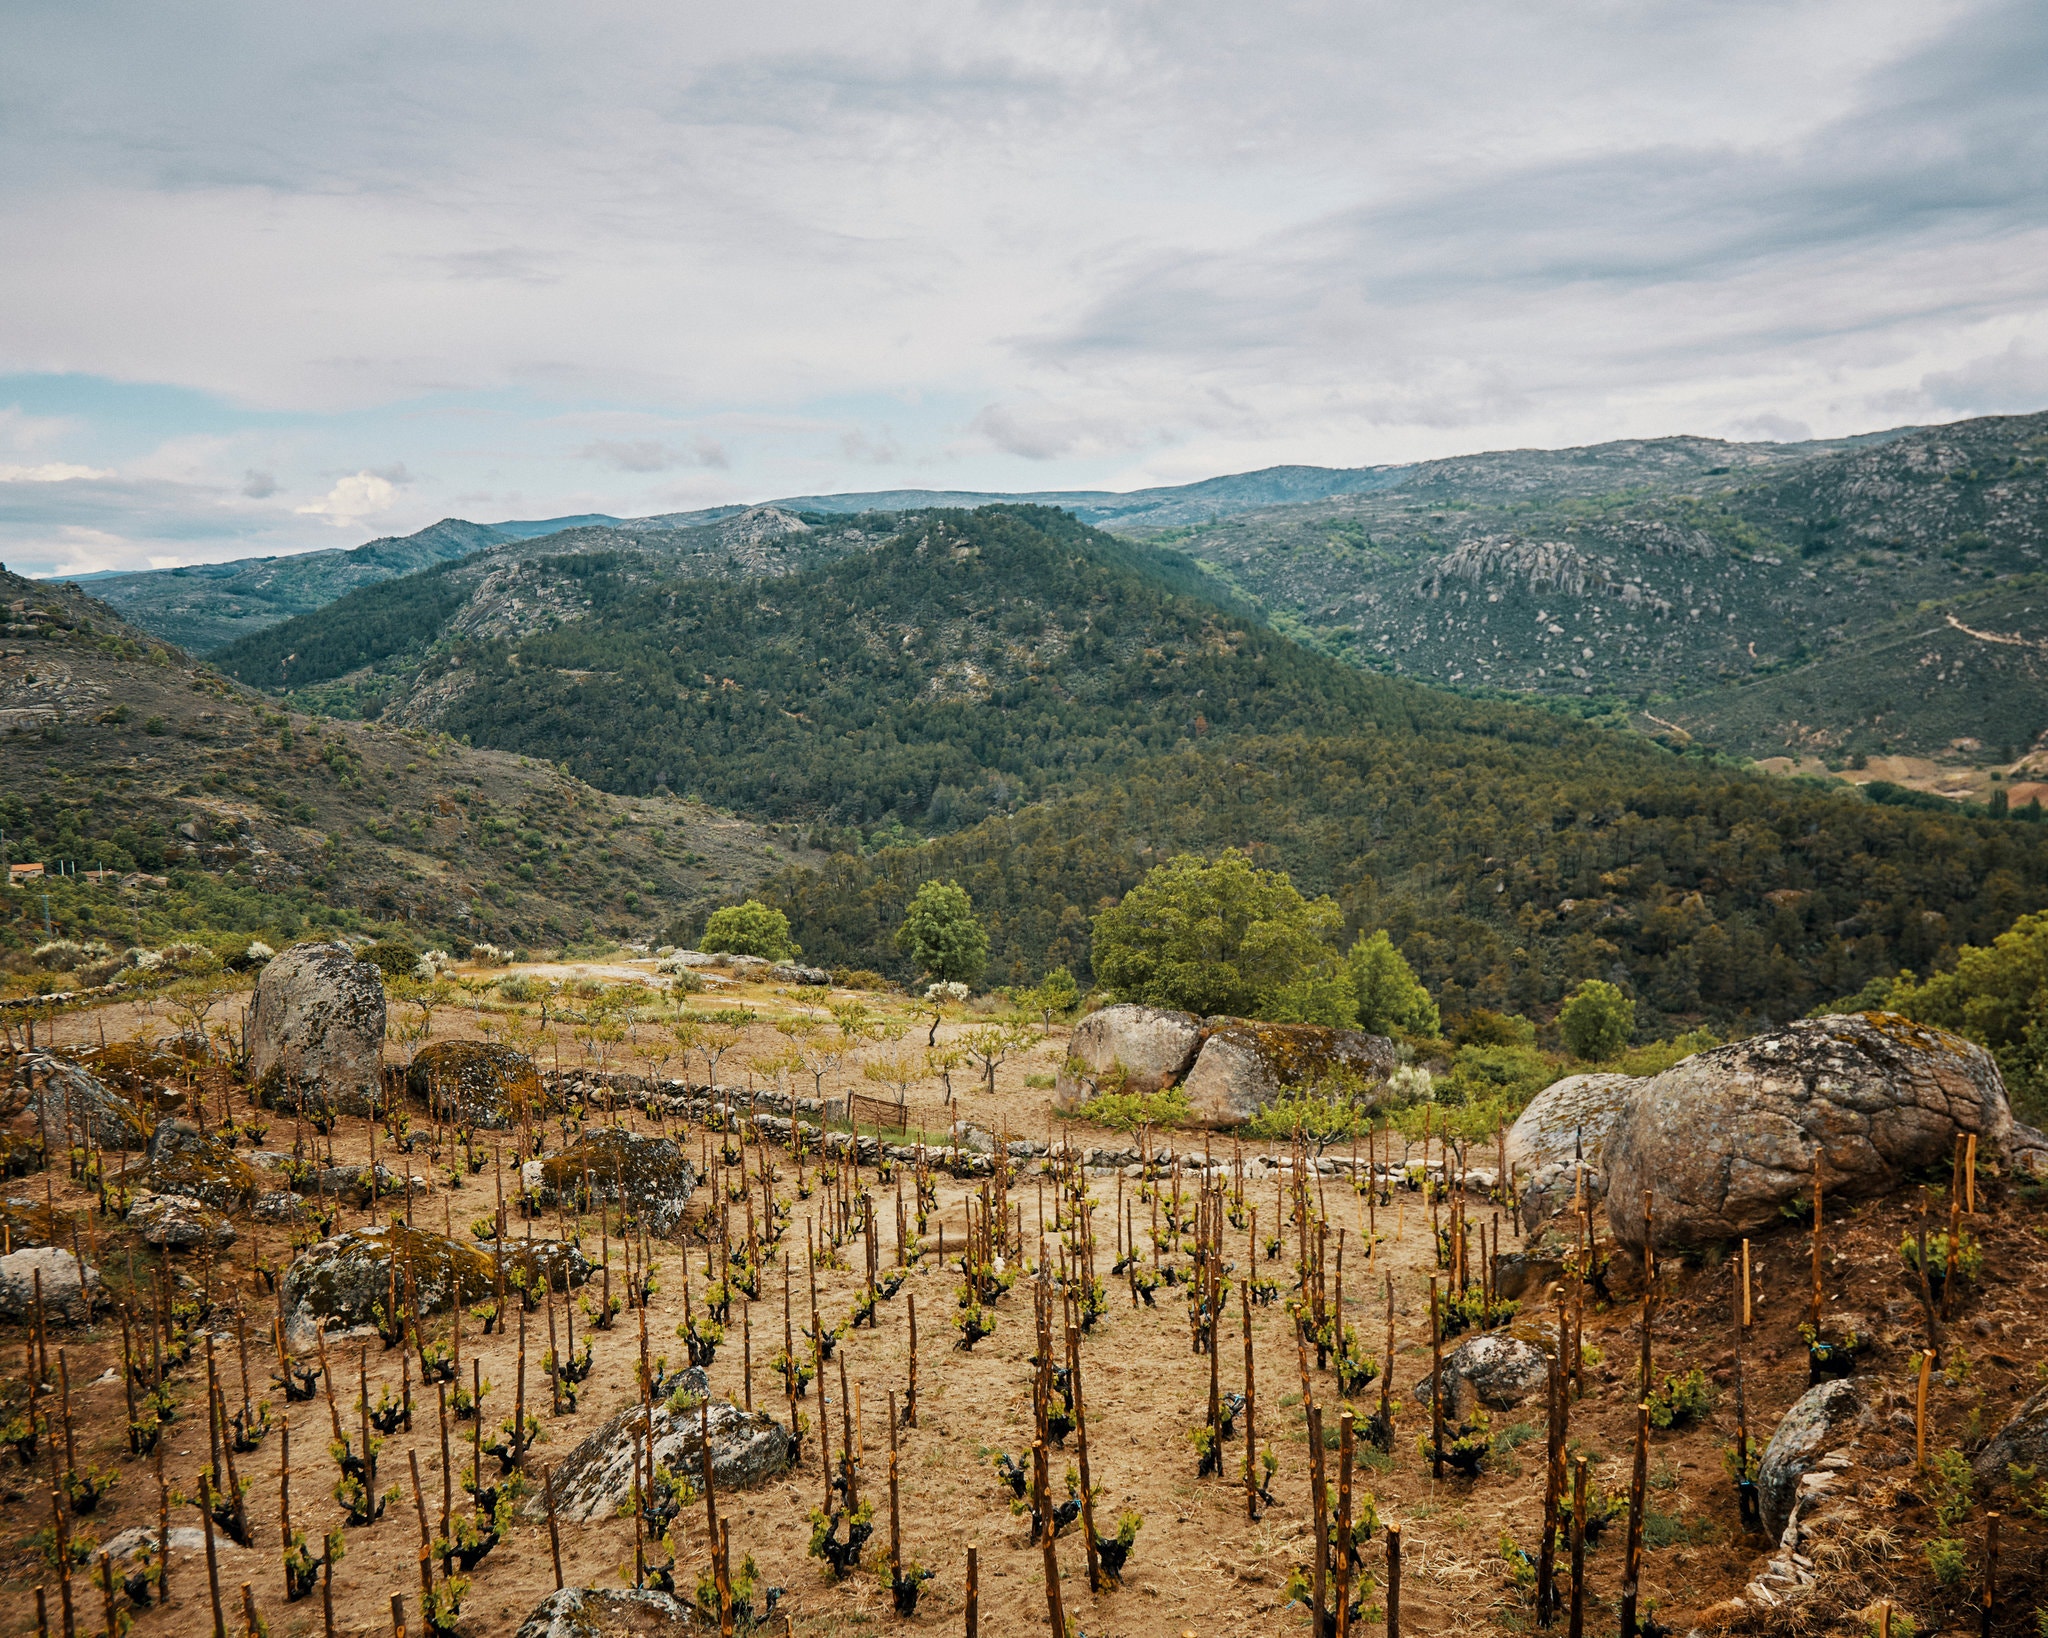 格雷多斯山区（Sierra de Gredos）壮观而险峻的山坡葡萄园，耕作极为不易